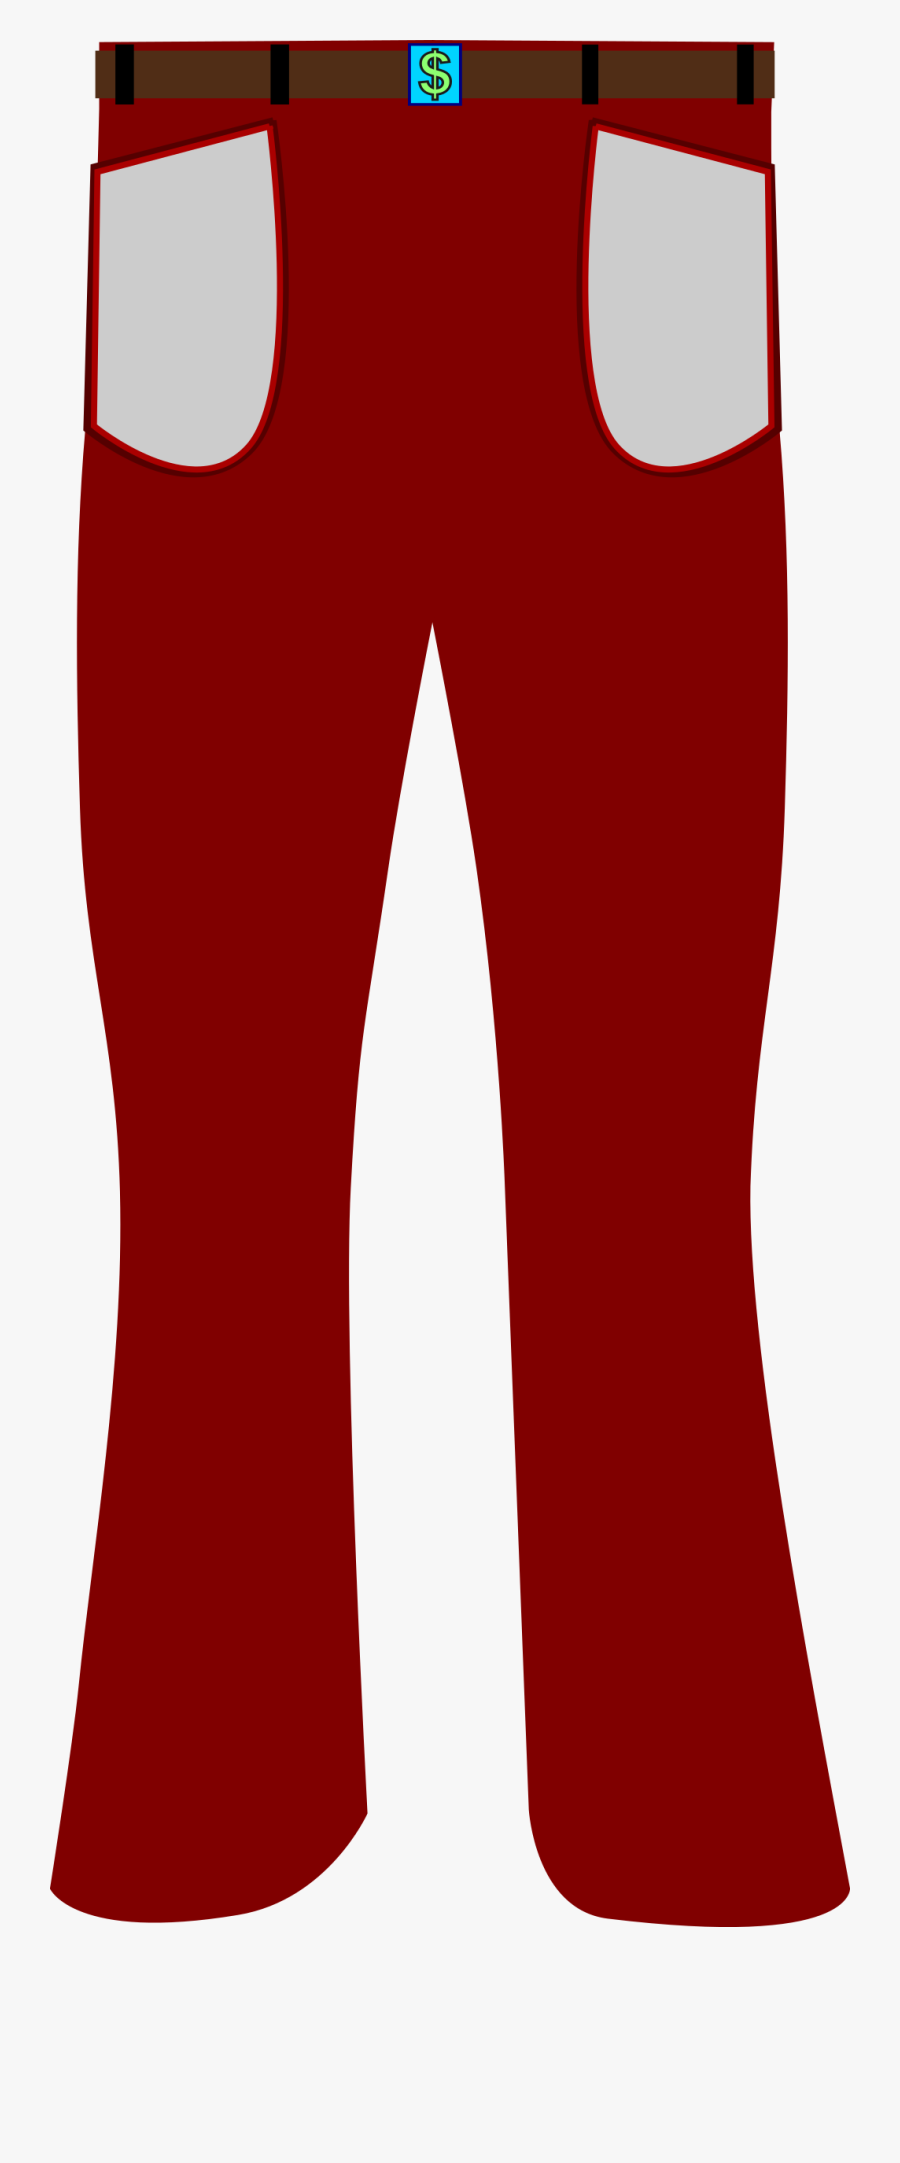 Transparent Pants Png - Red Pants Clipart , Free Transparent Clipart ...